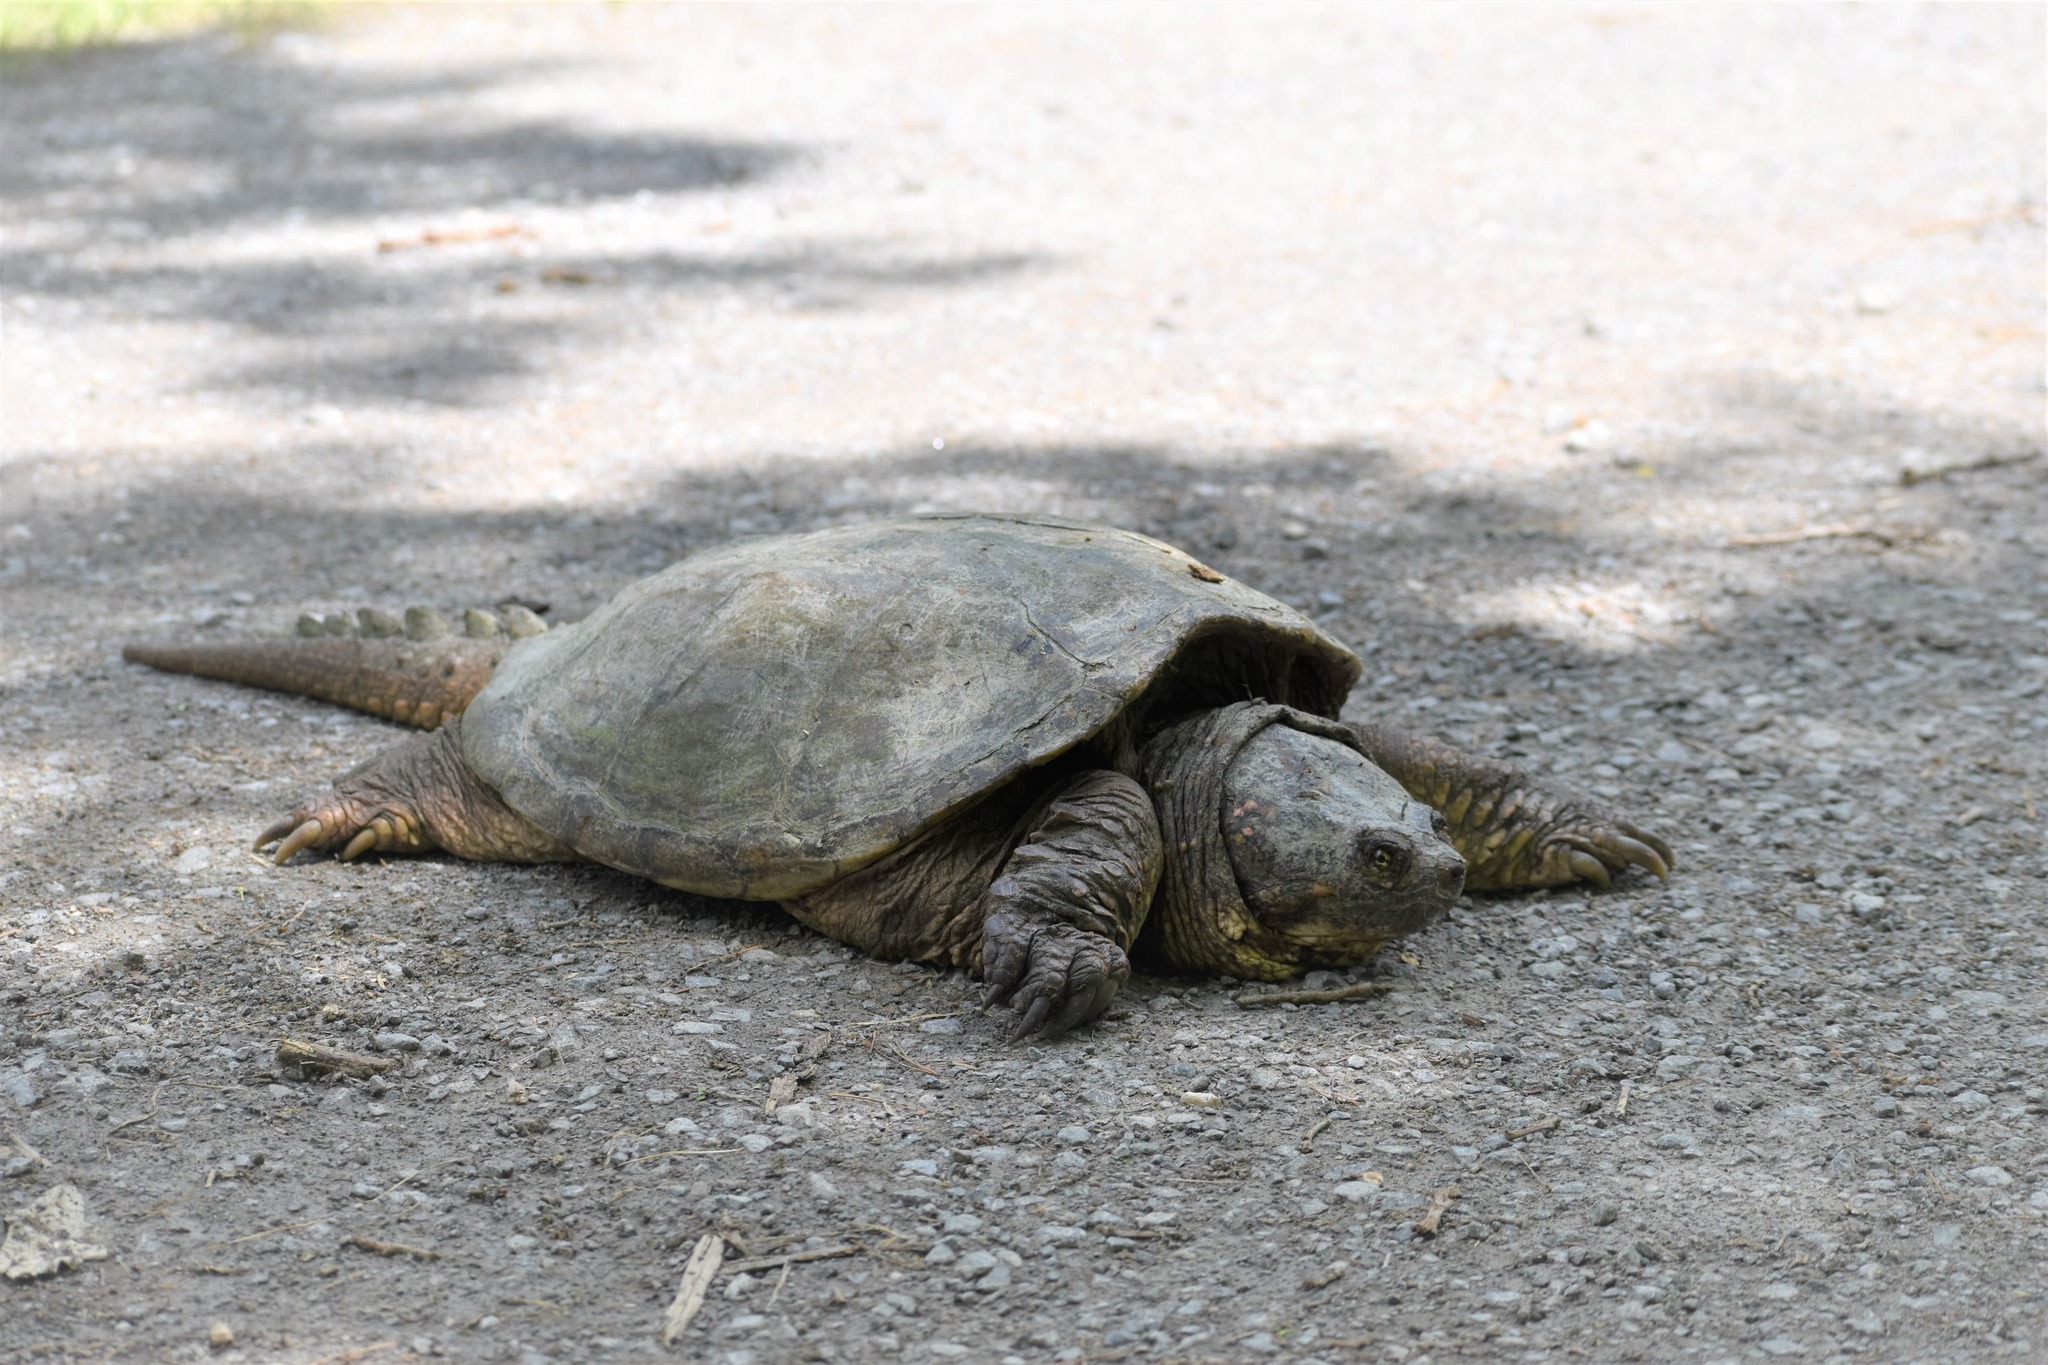 turtle on road